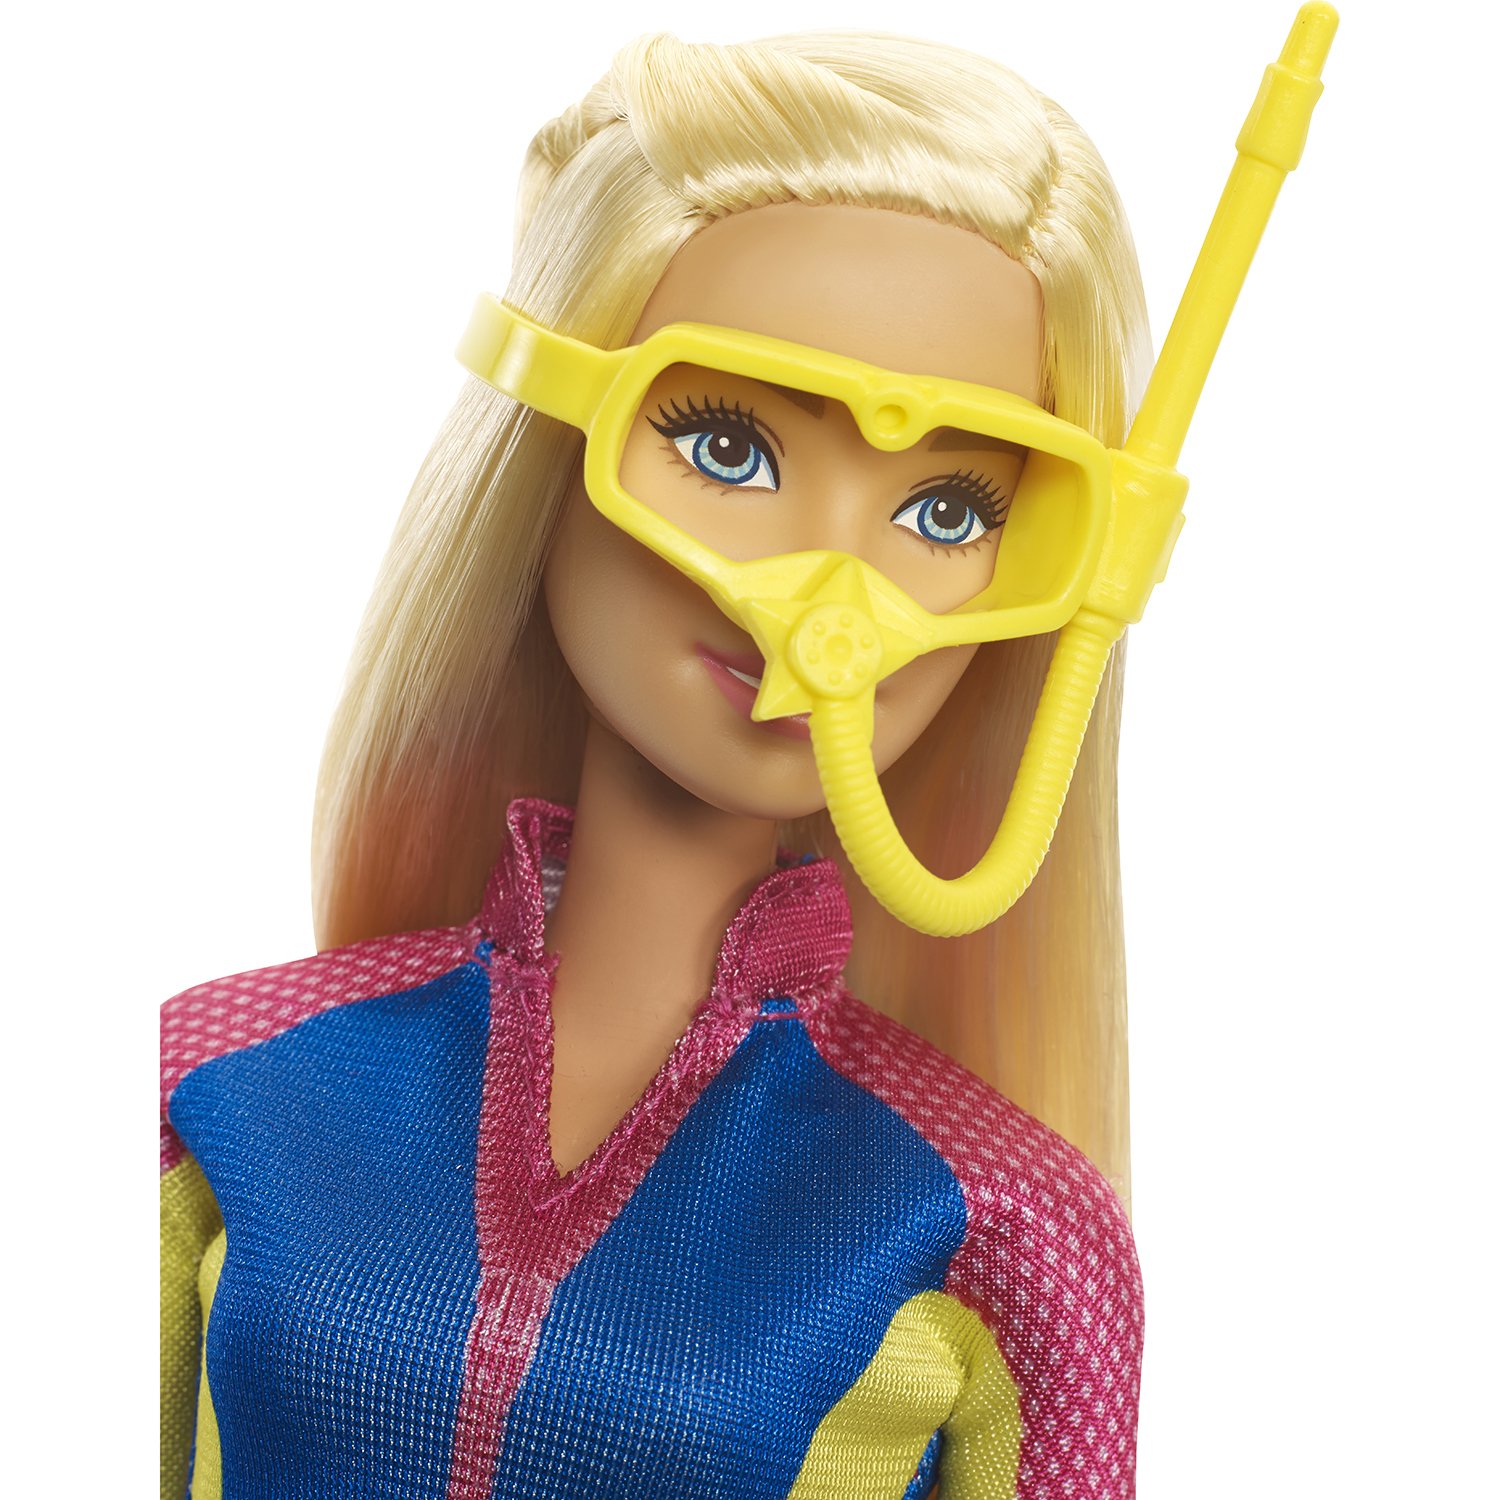 Кукла Barbie Морские приключения Ныряльщица, 29 см, FBD73